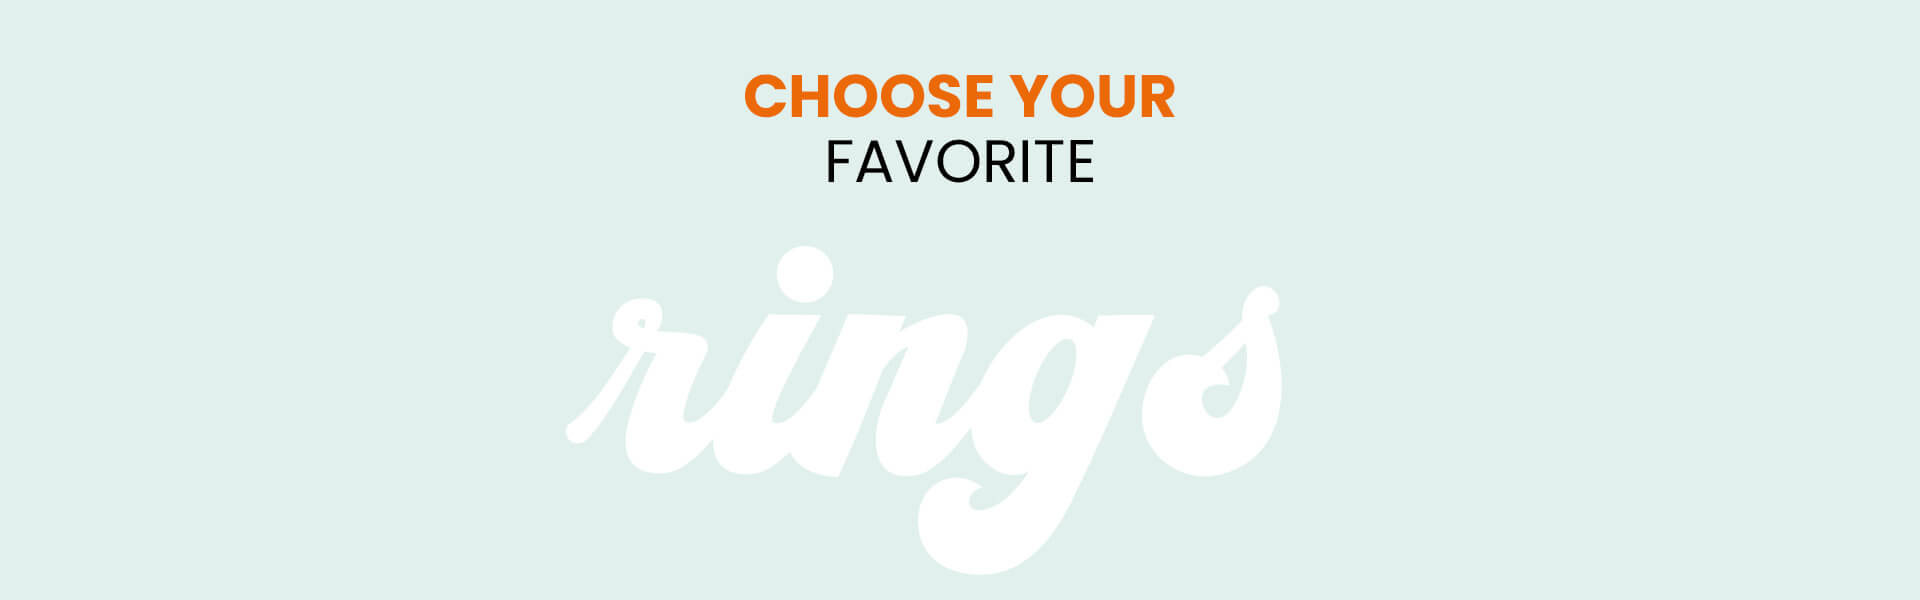 choose your favorite rings